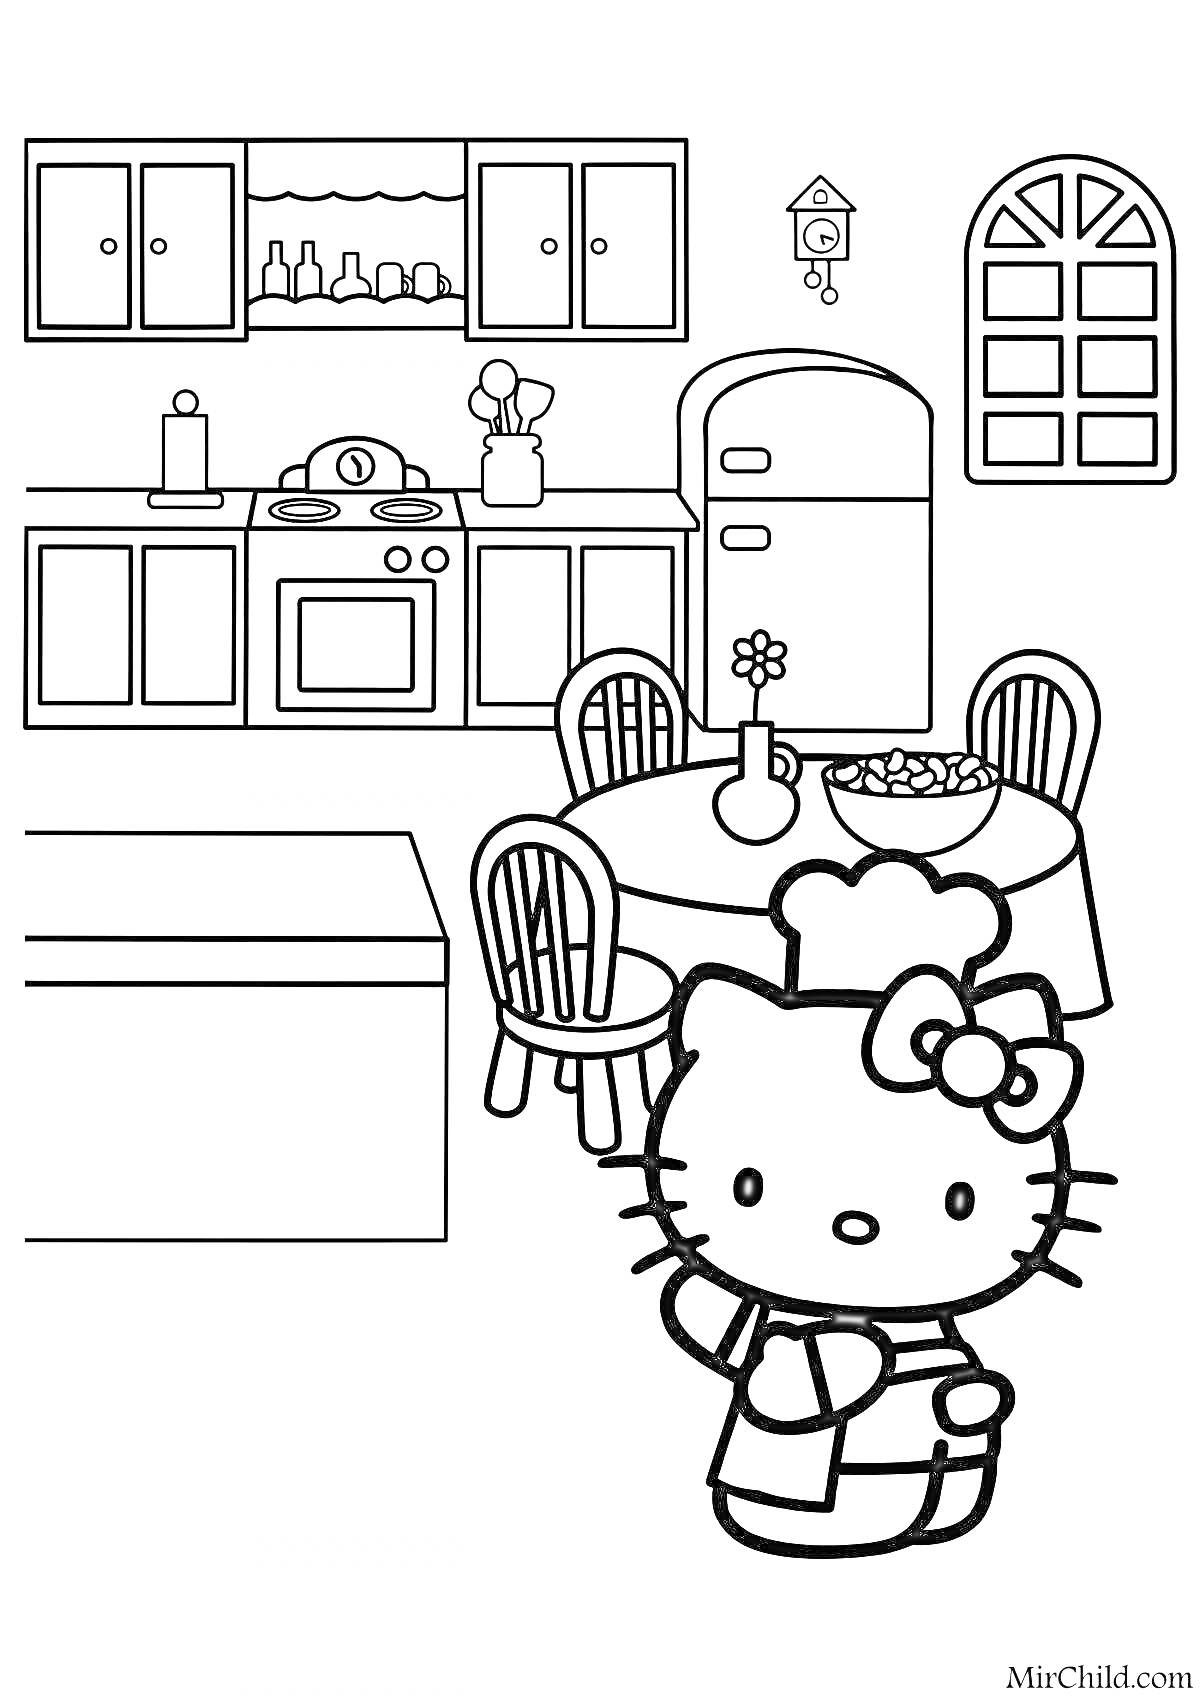 Раскраска Hello Kitty на кухне с мебелью и бытовой техникой